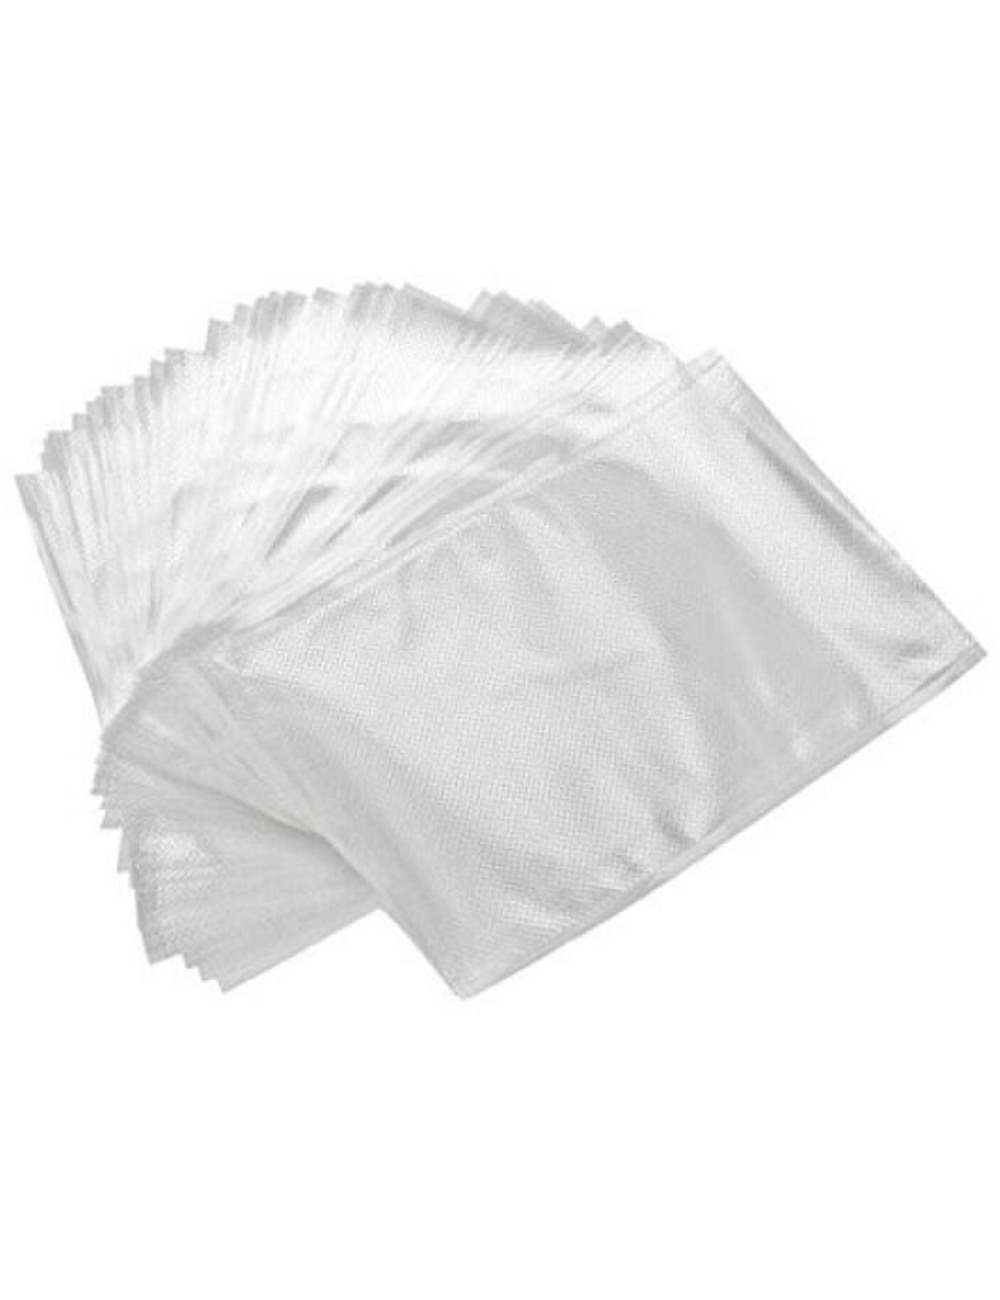 Bolsas plástico bloc transparente BD 25X30 G80 (500u) - Papeles Salvi